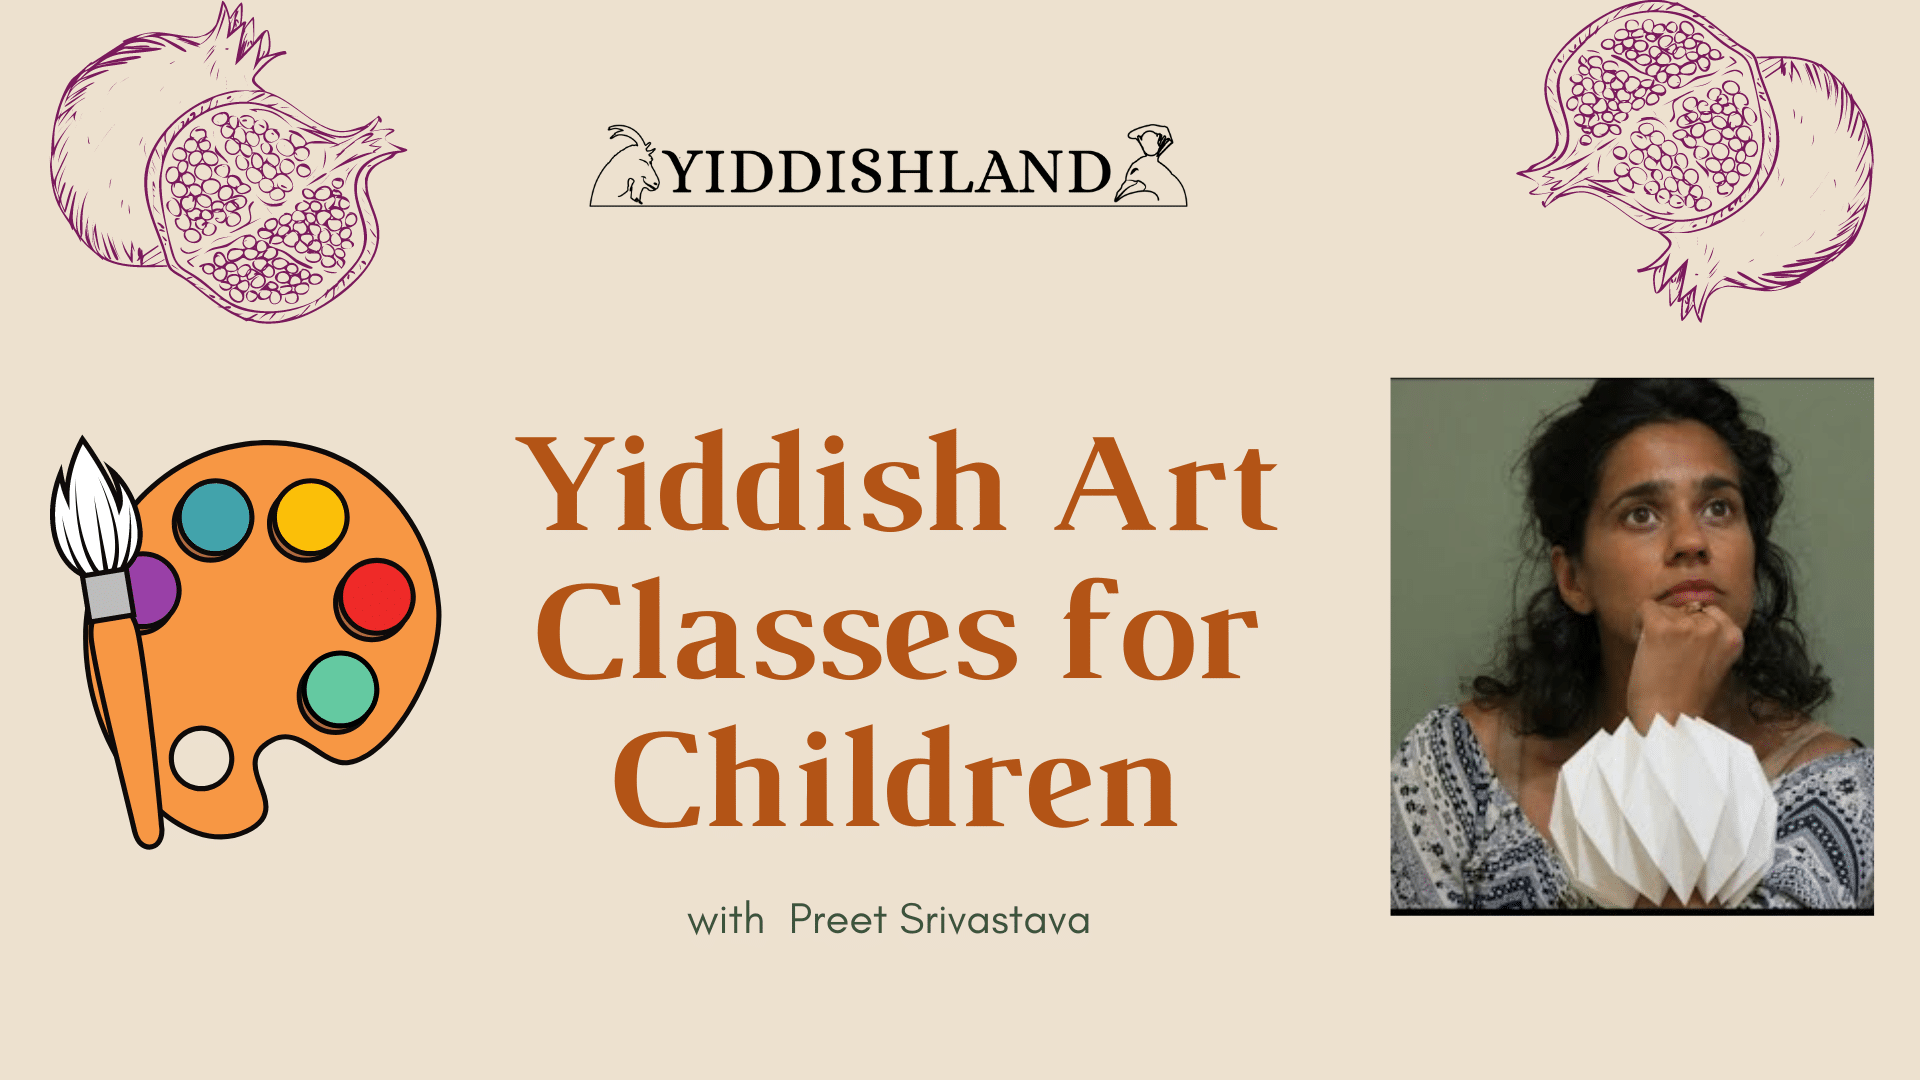 Yiddish Art Classes for Children with Preet Srivastava banner